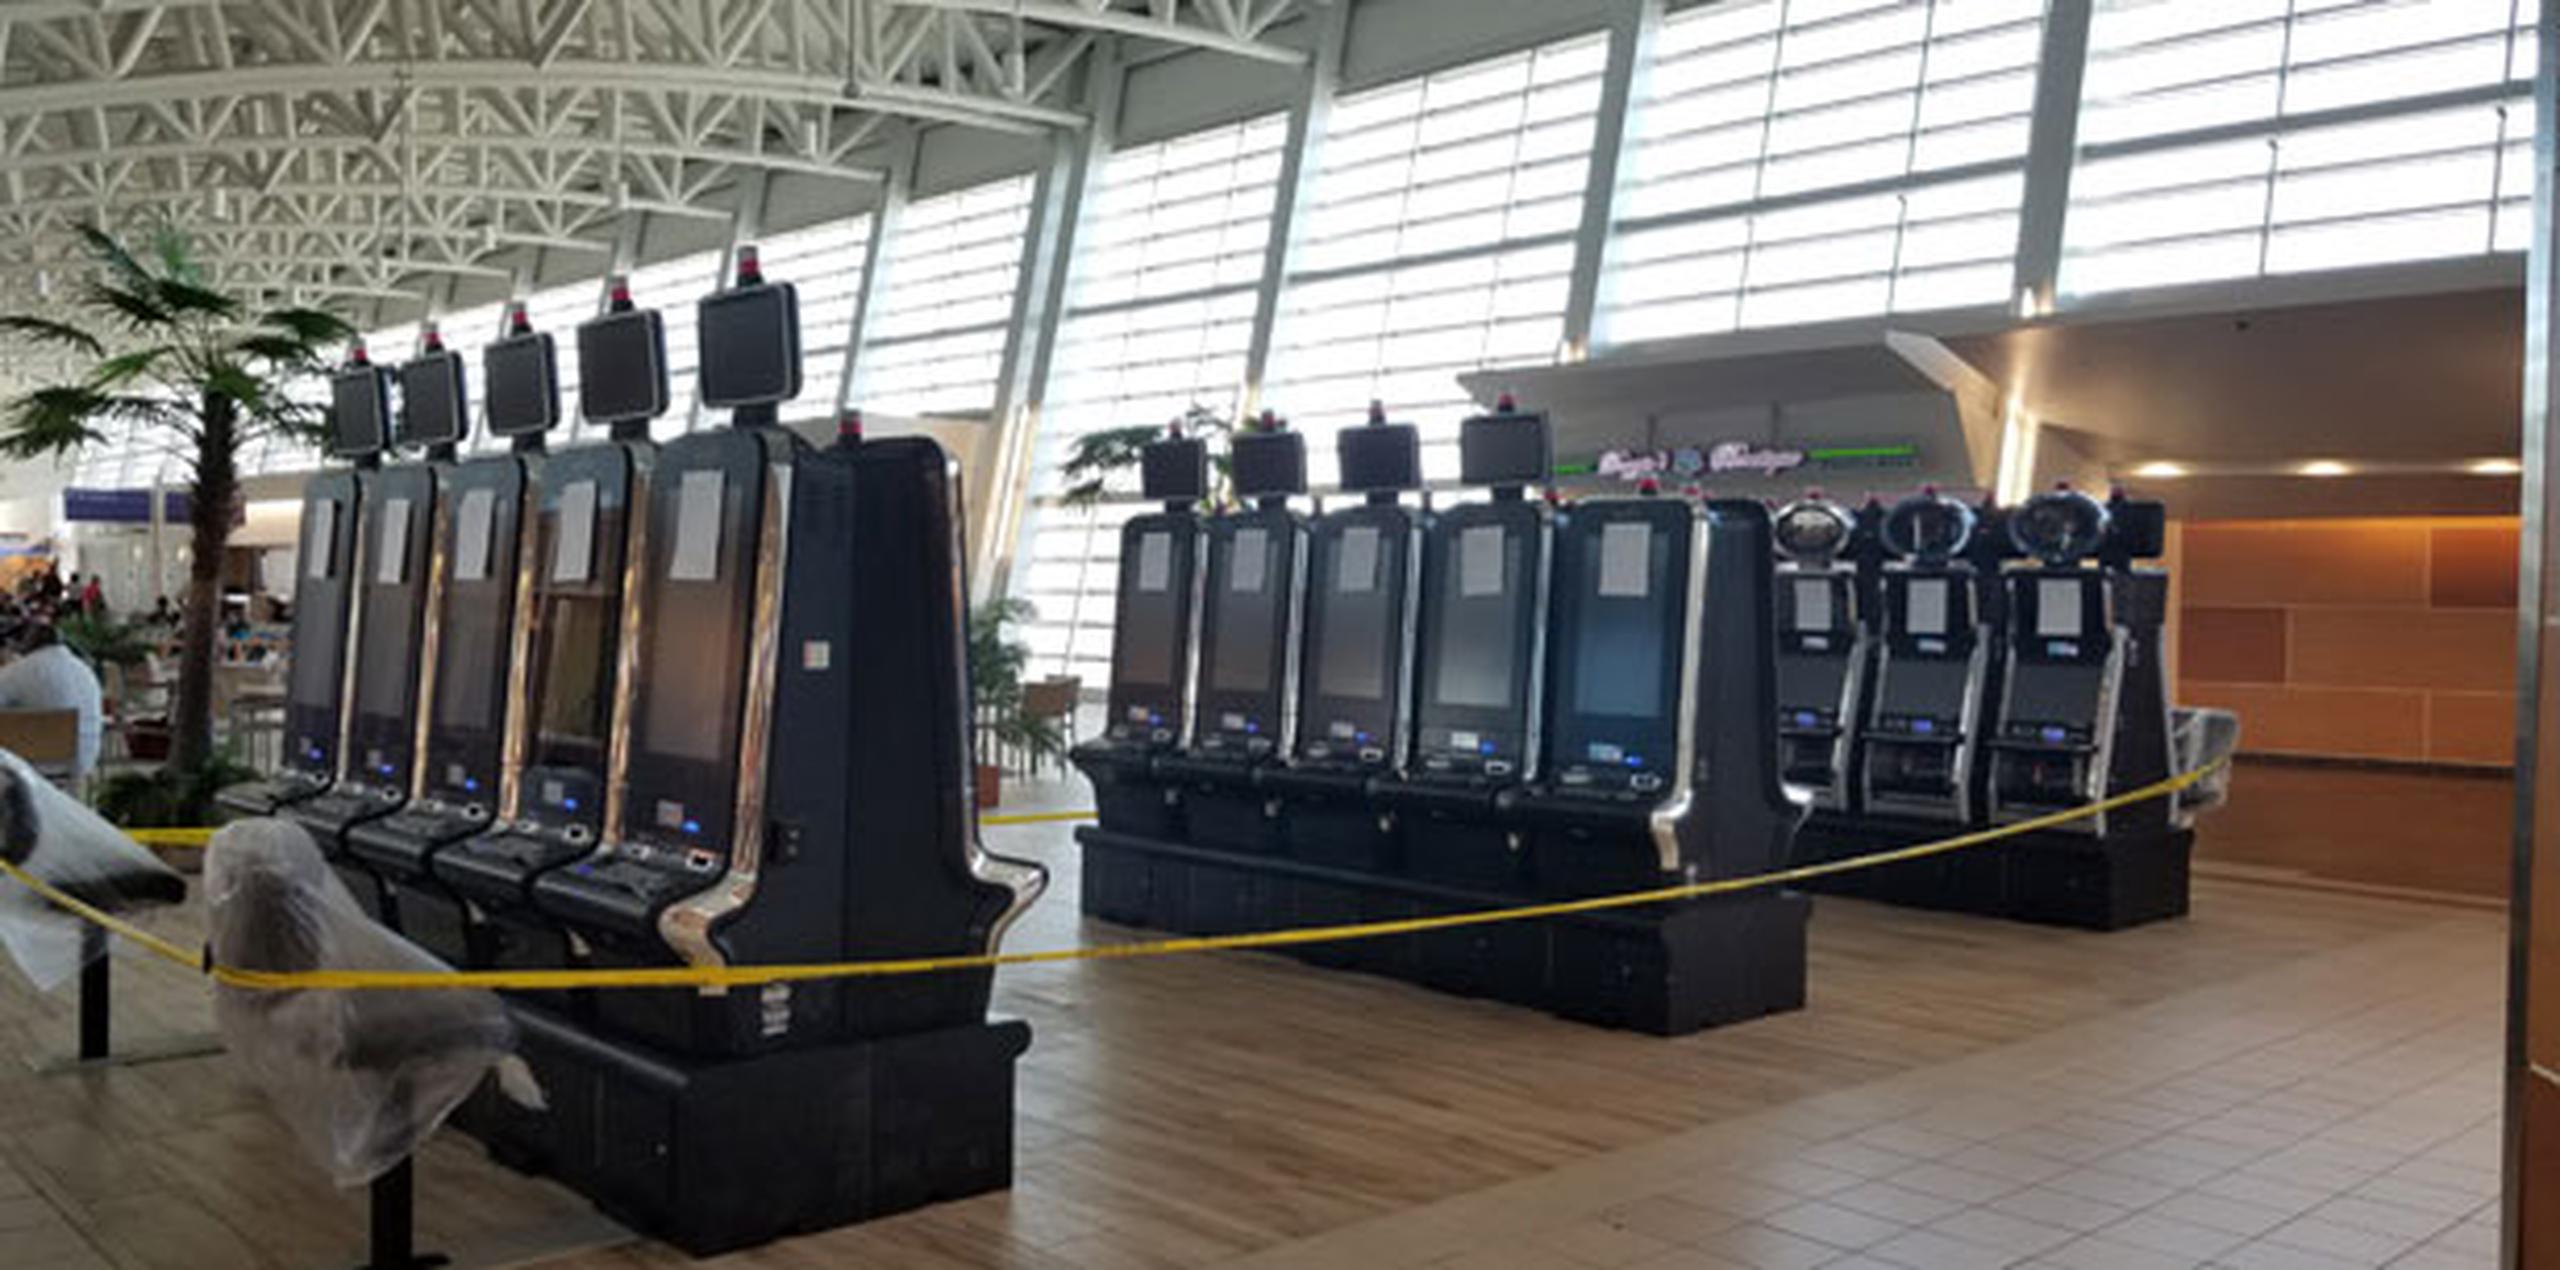 En redes sociales, empleados en el aeropuerto internacional señalan que al quitar butacas para pasajeros en espera de abordar sus vuelos para instalar máquinas tragamonedas se agravará el hacinamiento en los terminales. (Suministrada)